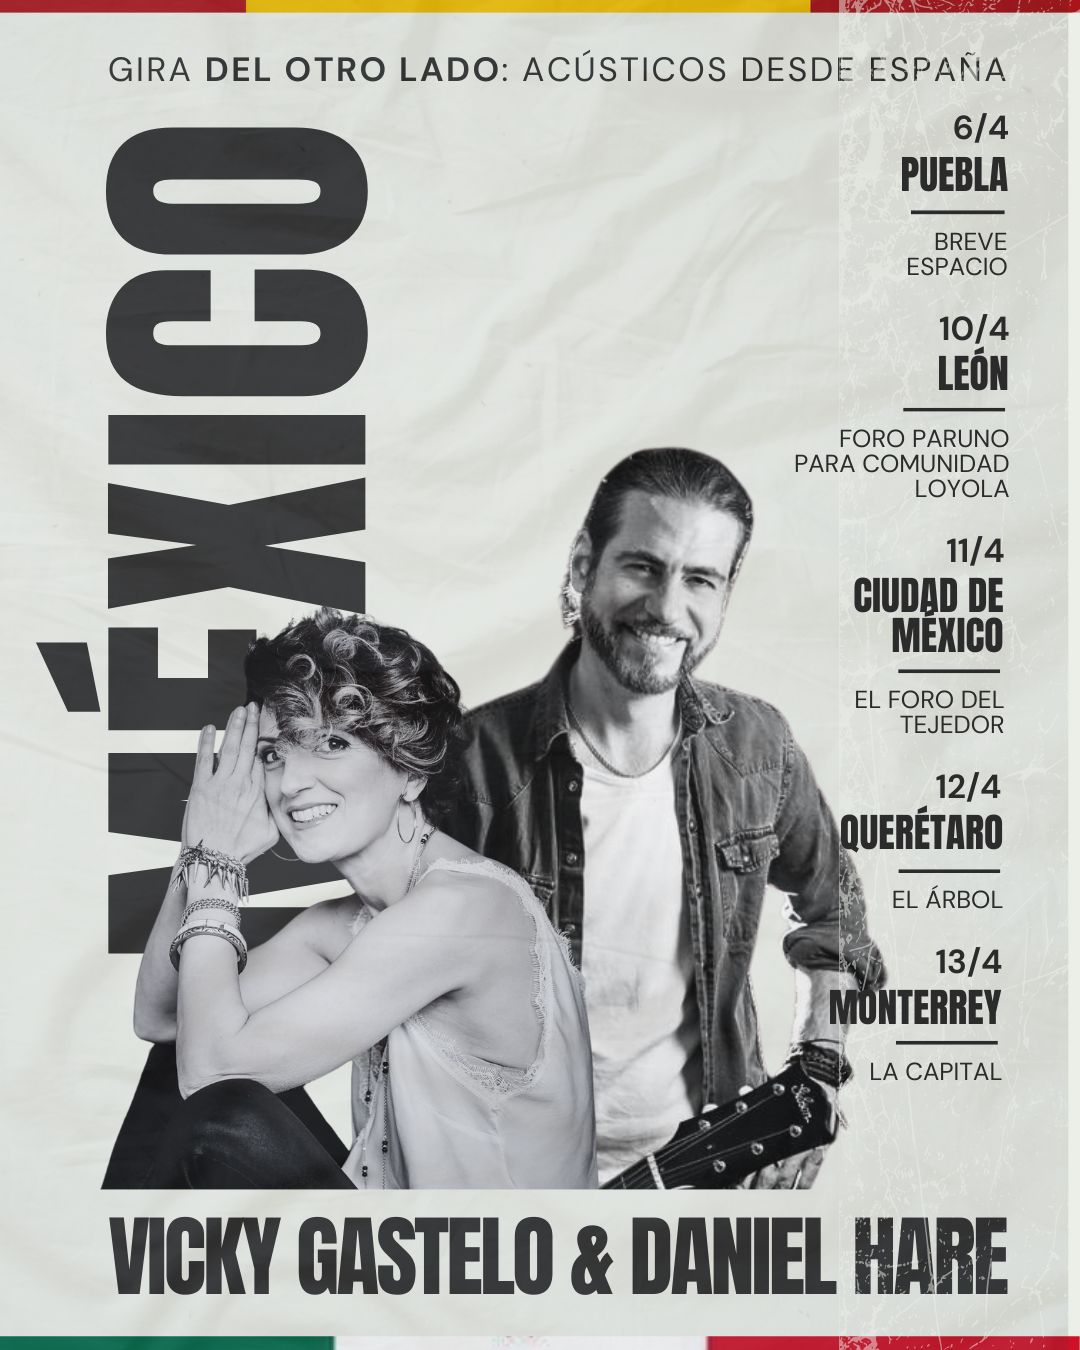 ¡No te pierdas este encuentro musical único en México con Vicky Gastelo y Daniel Hare! Disfruta de una experiencia íntima y emocionante este abril